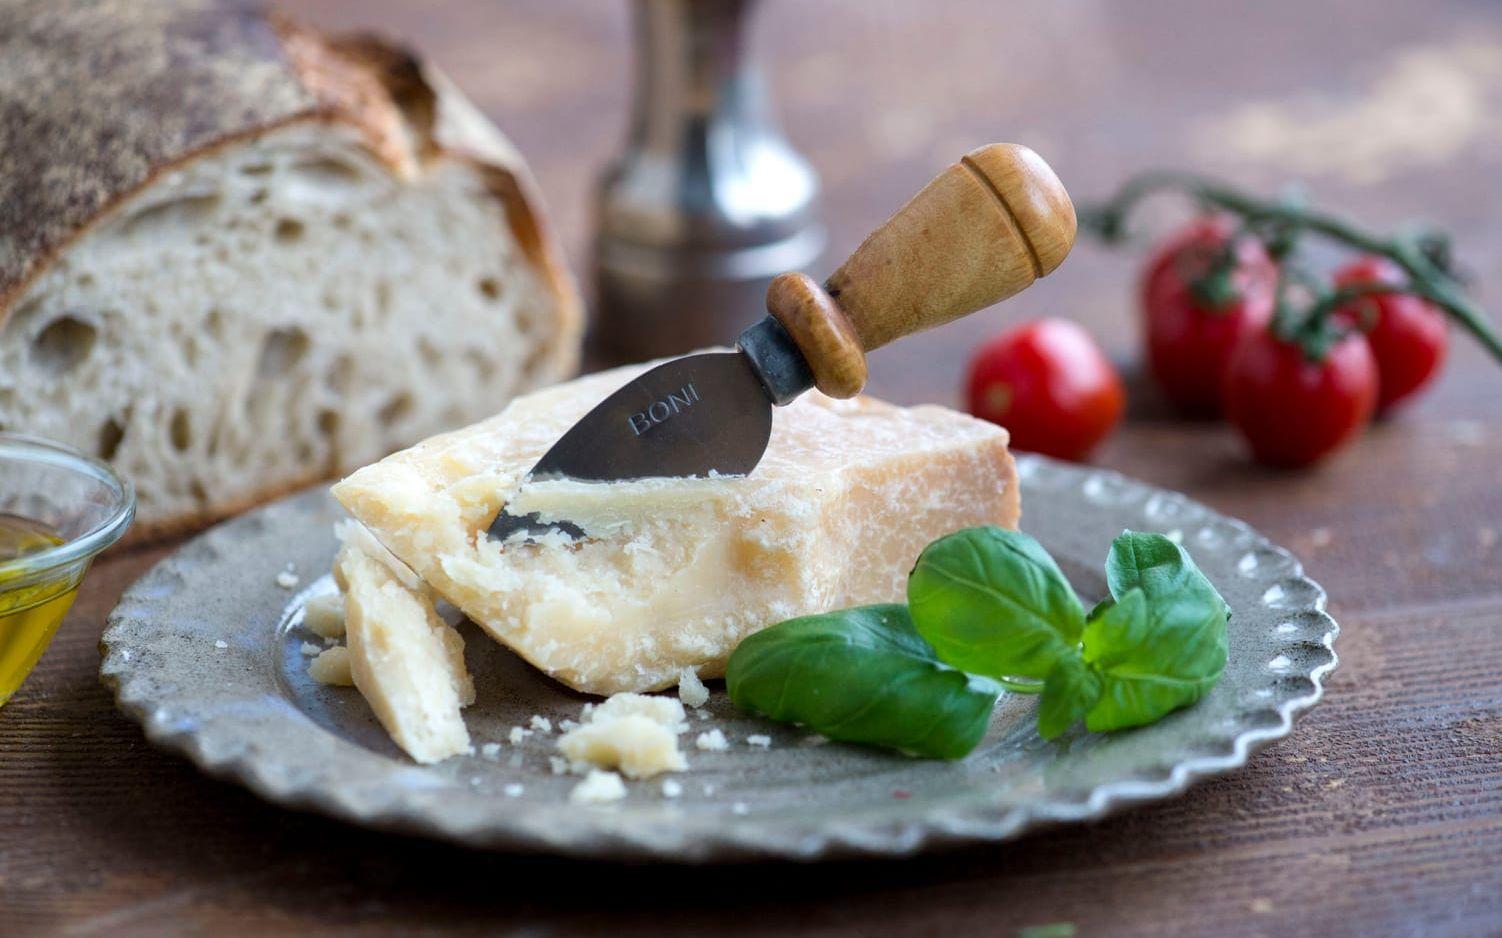 Osttillverkare i USA surar på EU för stränga krav vid livsmedelsexport. En följd är att Parmesan säljs under namnet Sarmesan. Bild: TT